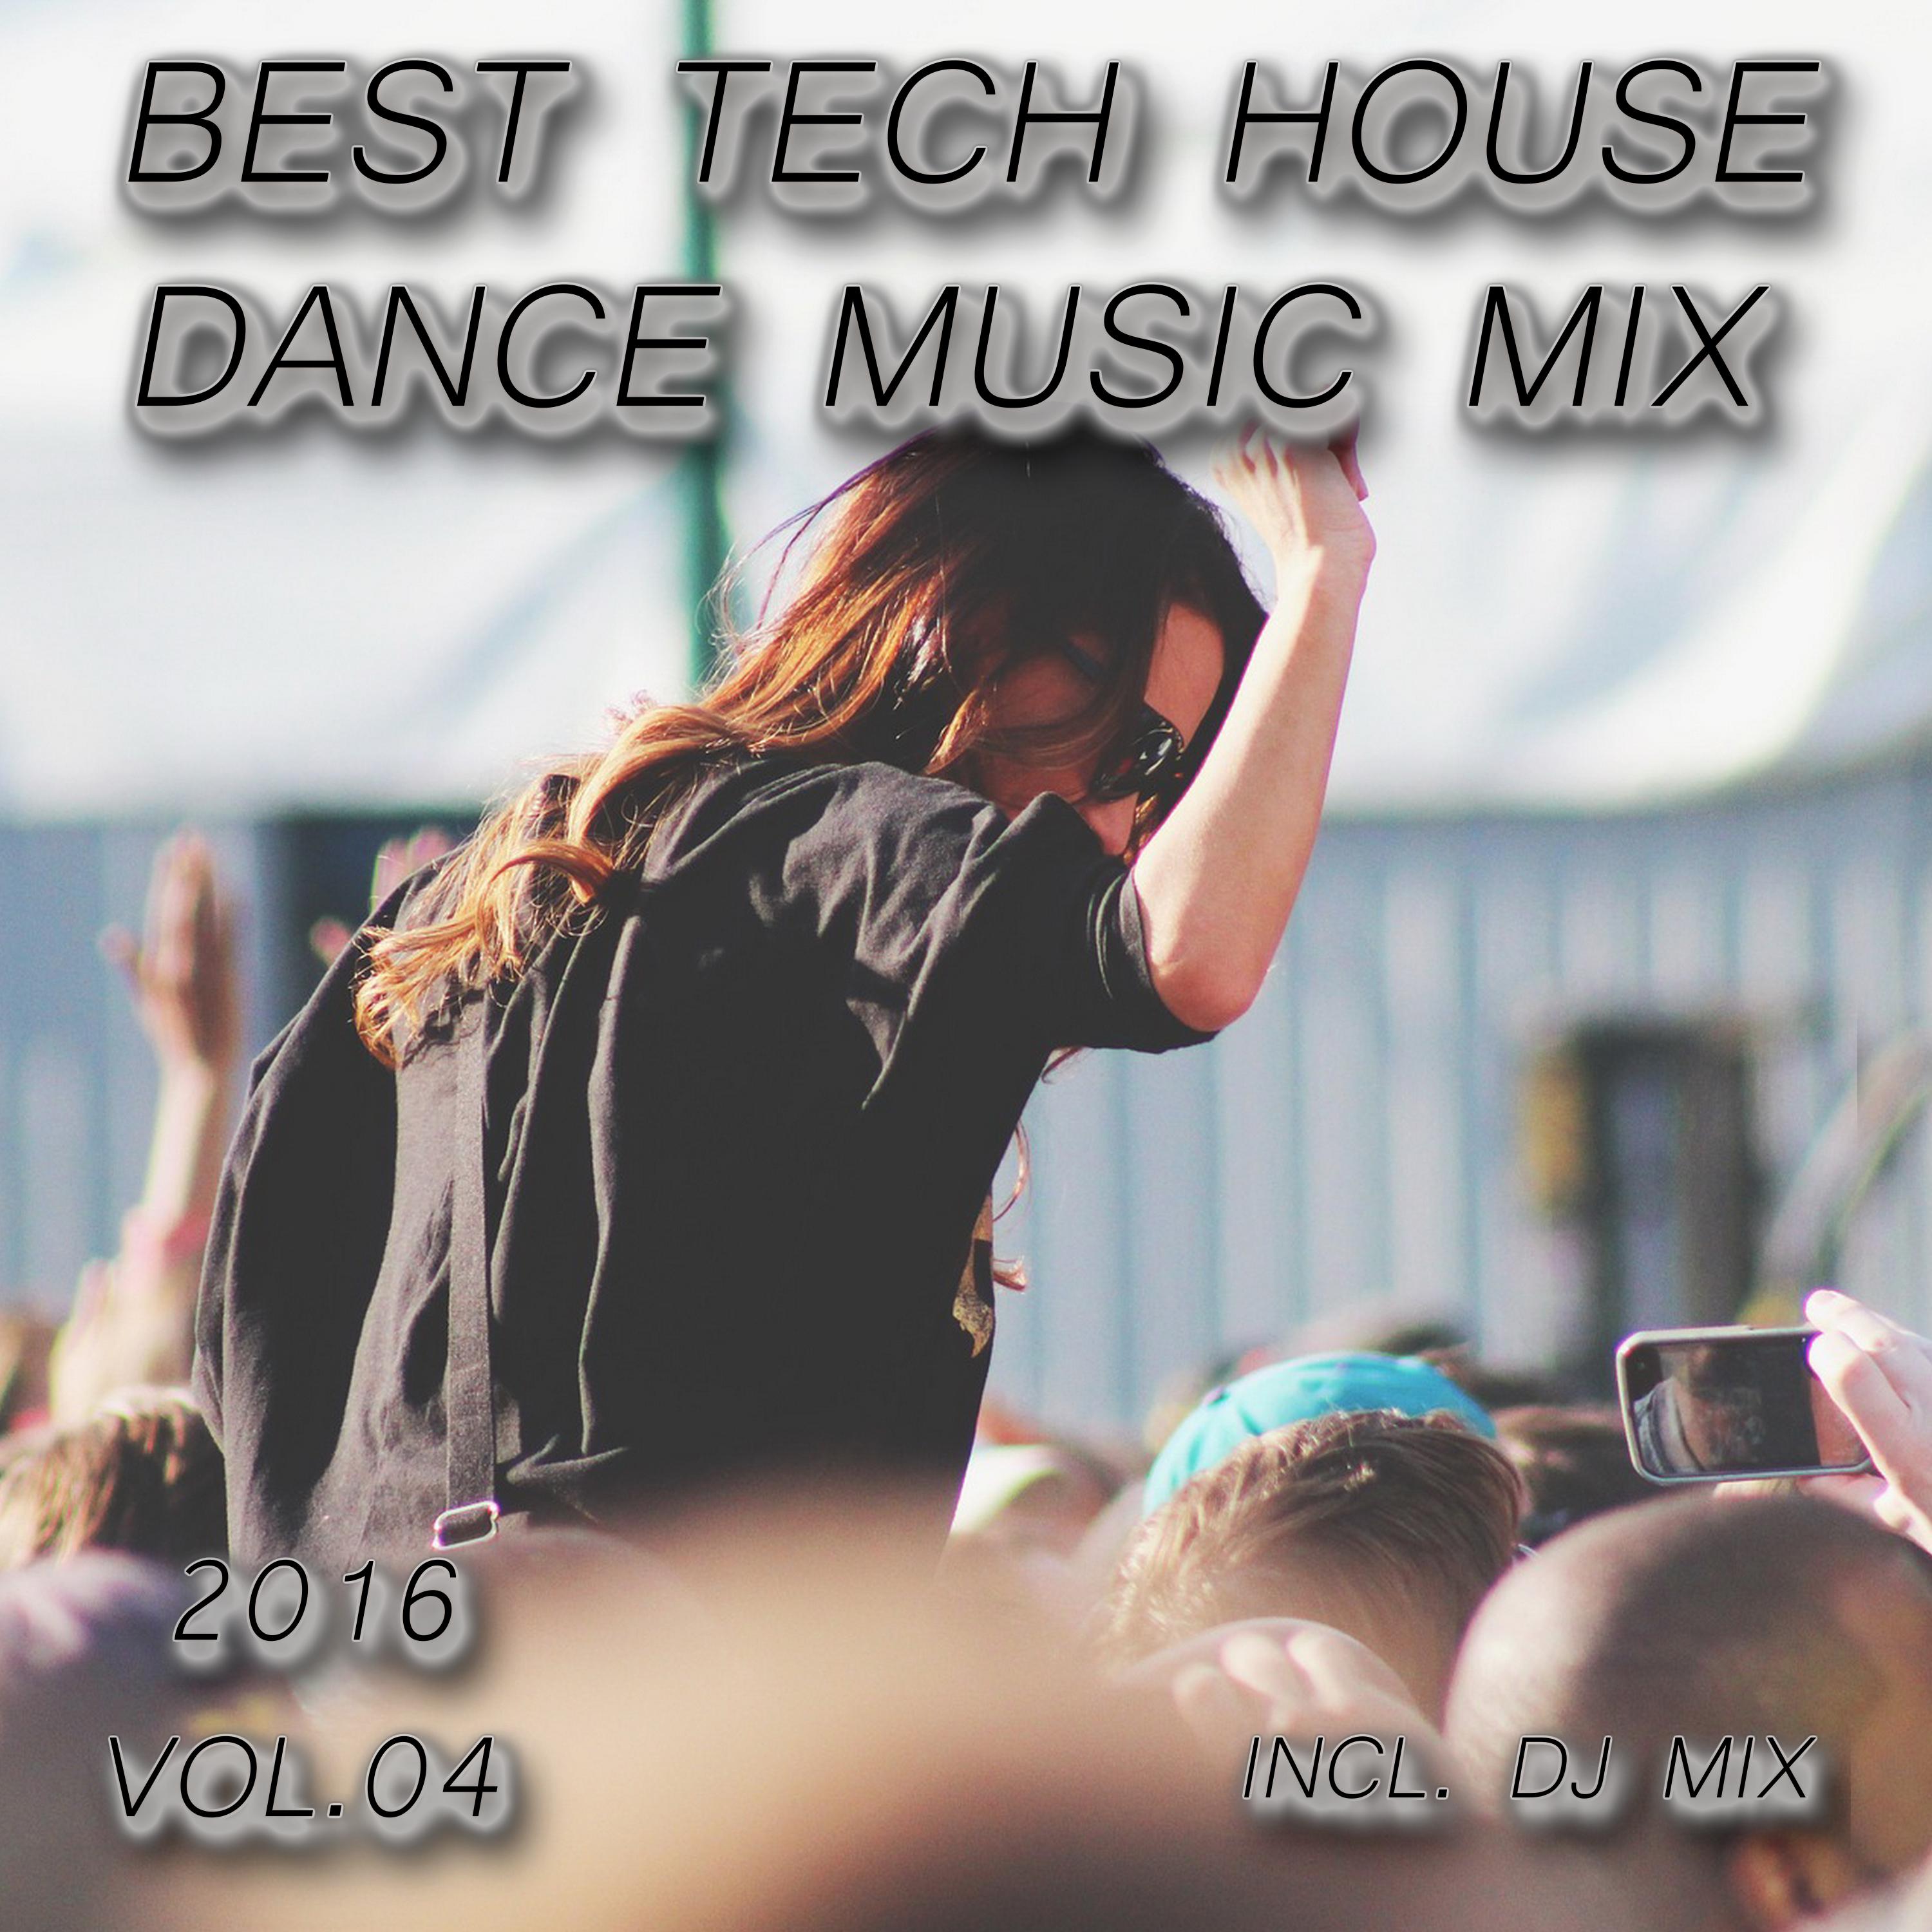 Best Tech House Dance Music Mix 2016, Vol. 04